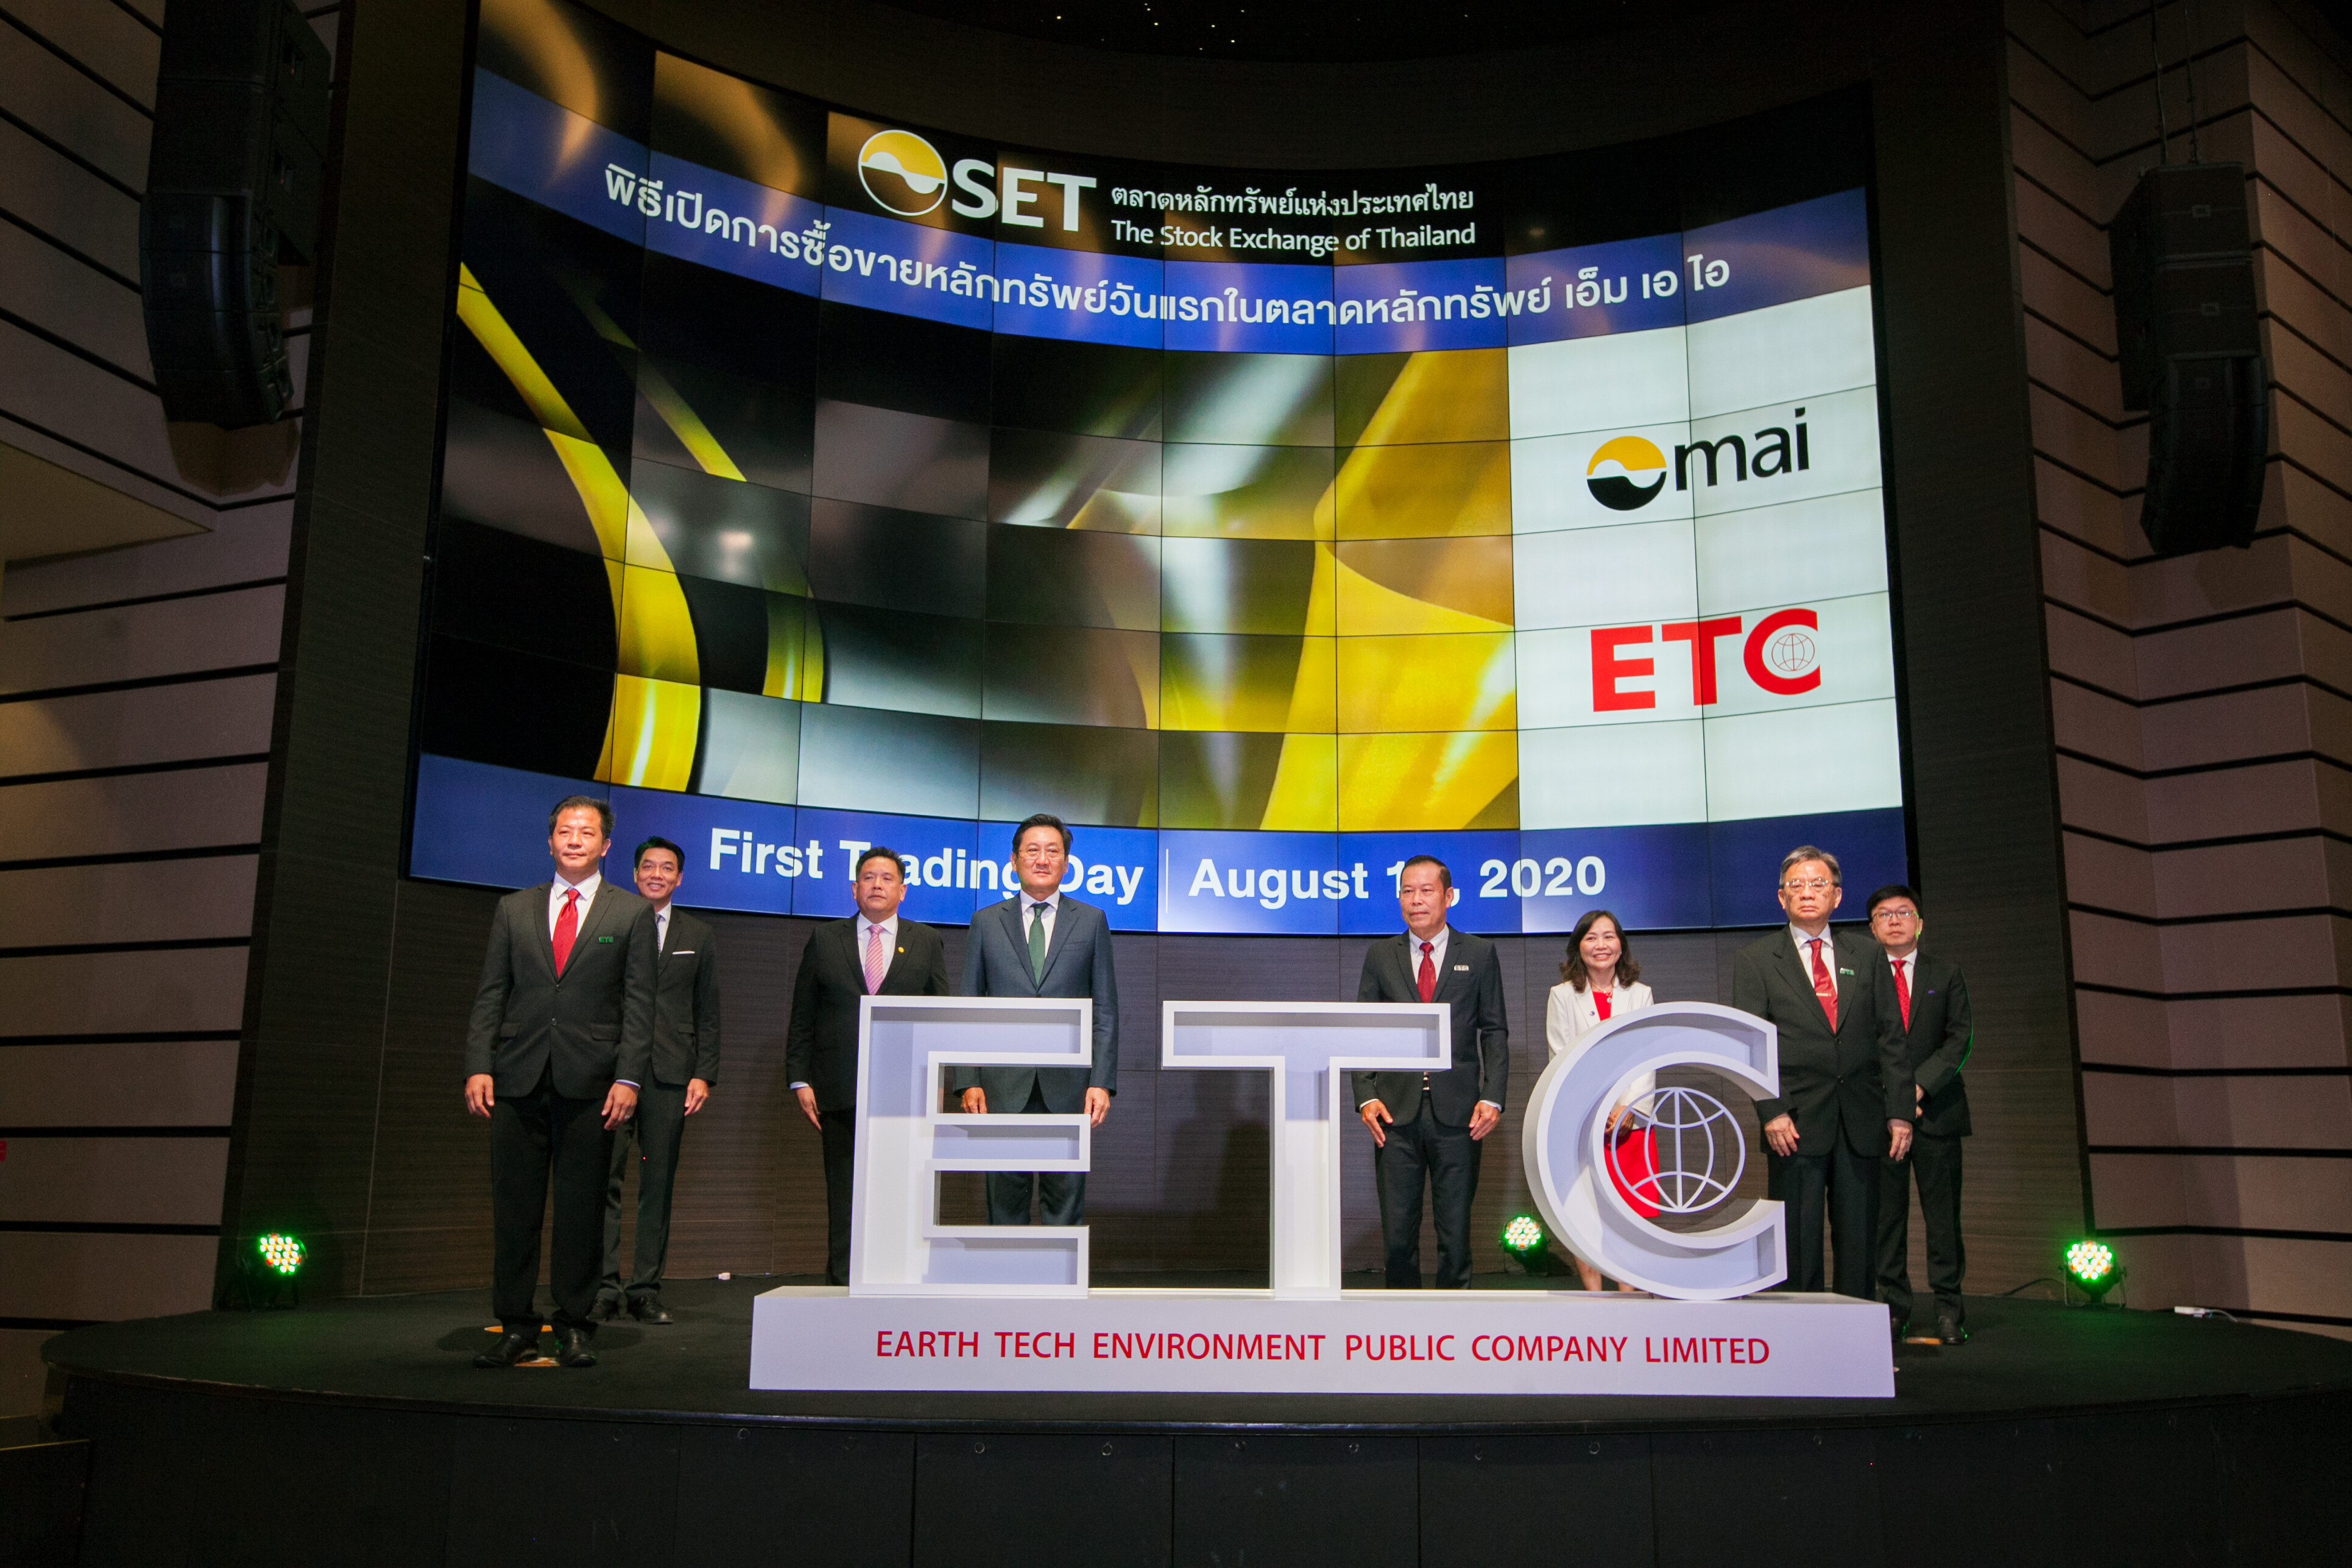 ภาพข่าว: ETC เข้าเทรดวันแรก 4 บาท ราคาหุ้นพุ่ง 54% โชว์ศักยภาพผู้นำโรงไฟฟ้าขยะอุตสาหกรรมครบวงจรแห่งแรกในประเทศไทย